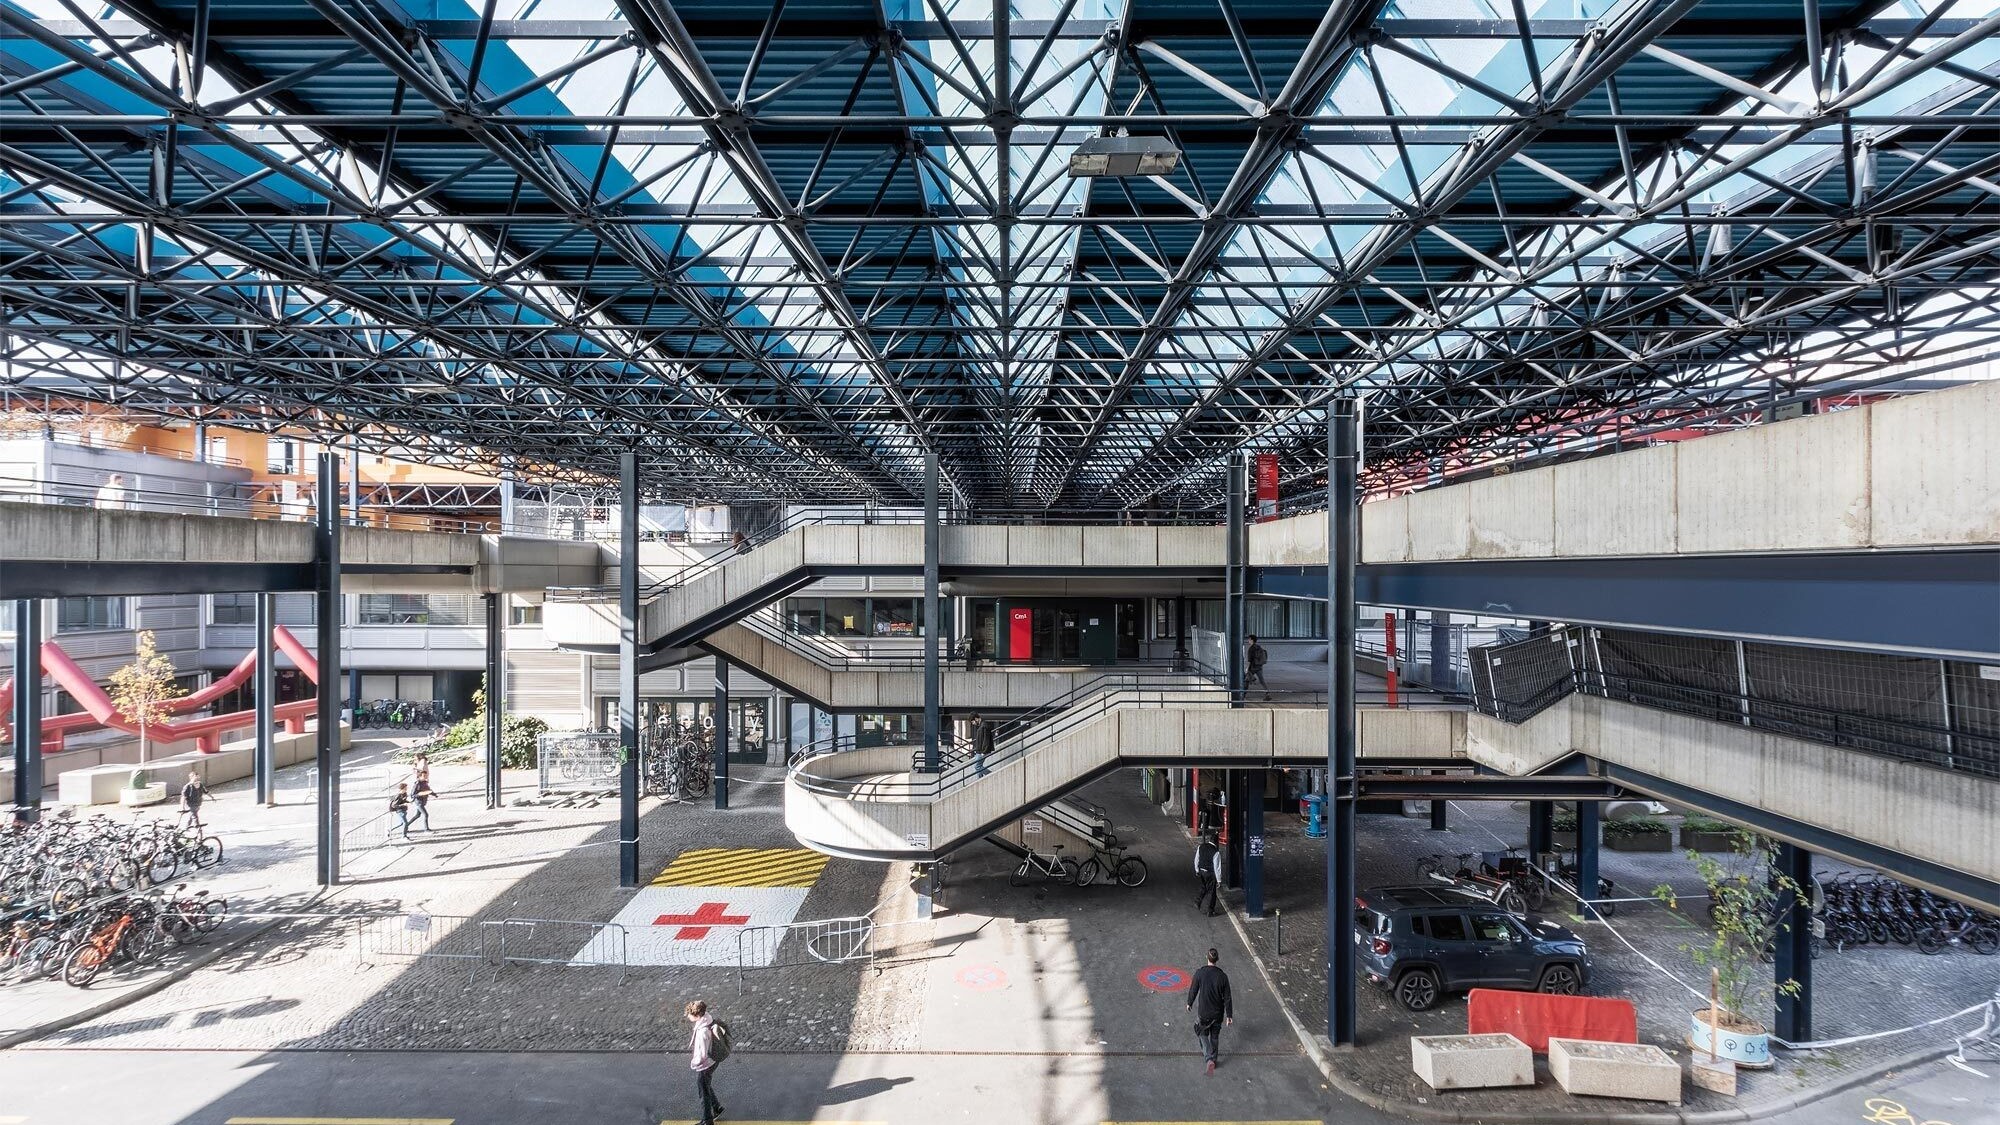 Le projet des architectes zurichois Zweifel & Strickler pour l’aménagement de la première étape du site de l’EPFL se fonde sur un système en grille régulière. Les instituts sont alignés le long d’un axe est-ouest et séparés par des cours. La structure de